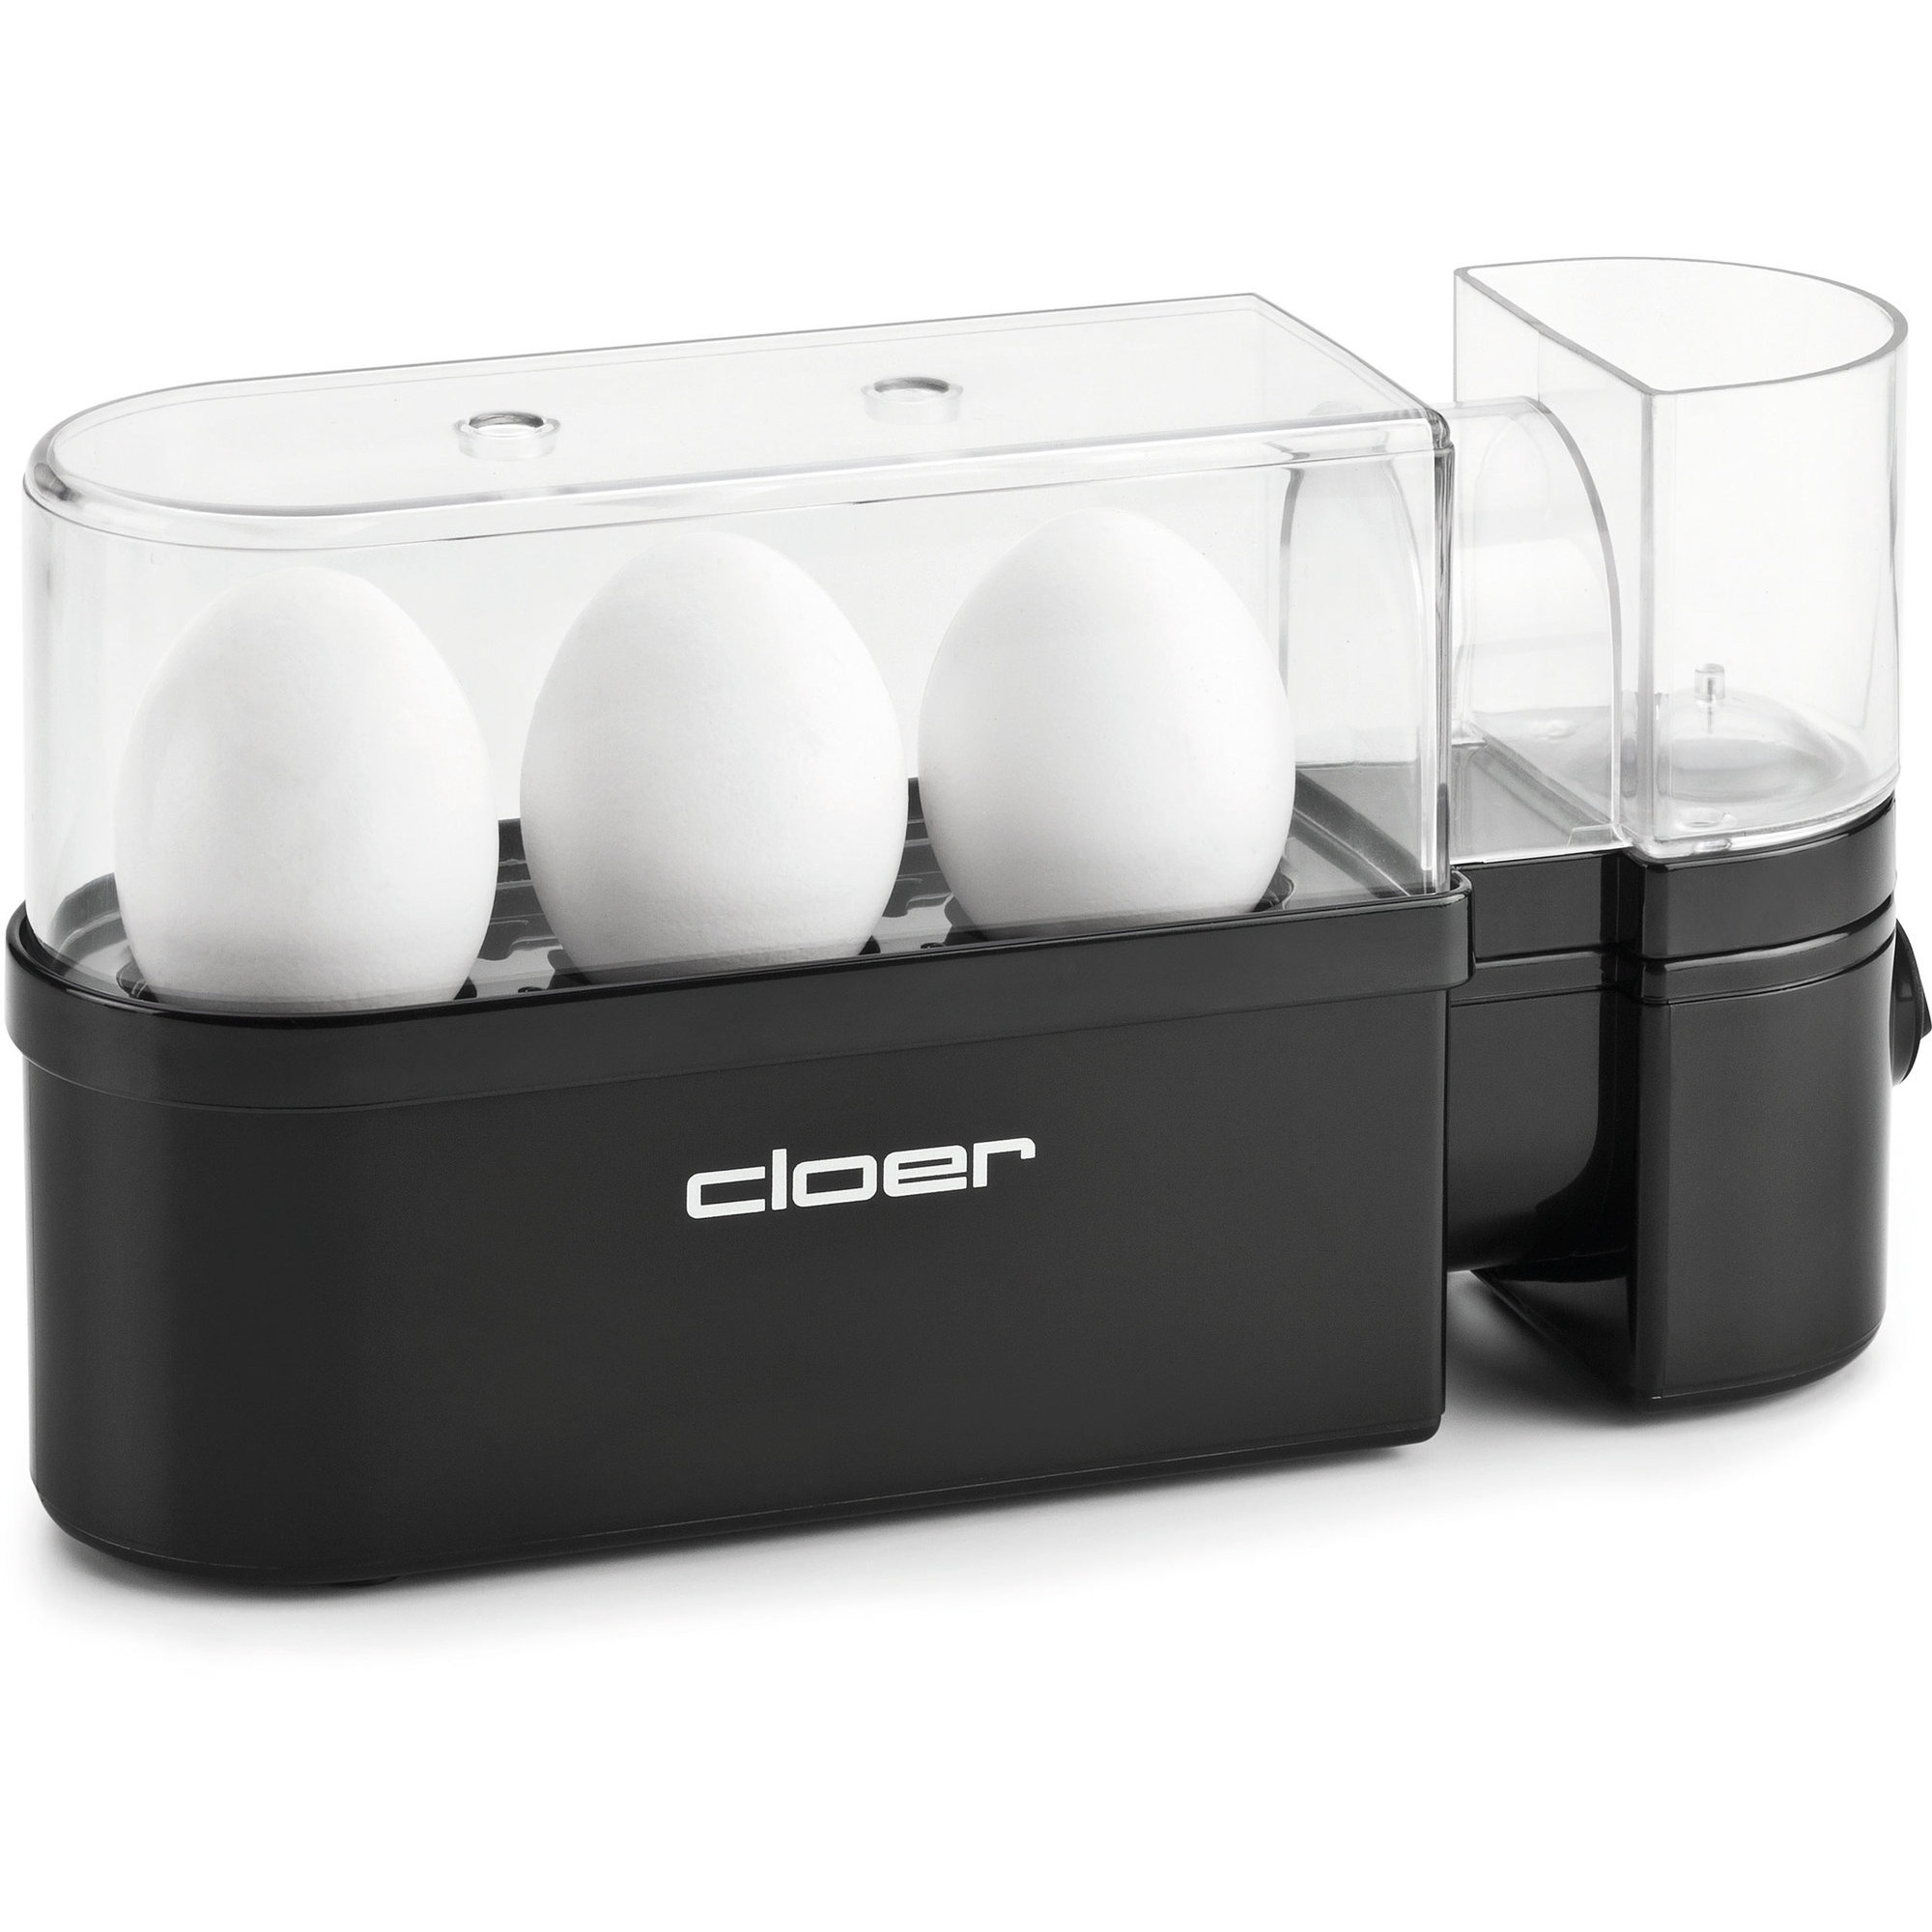 Cloer Eggekoker 3 egg – Svart test